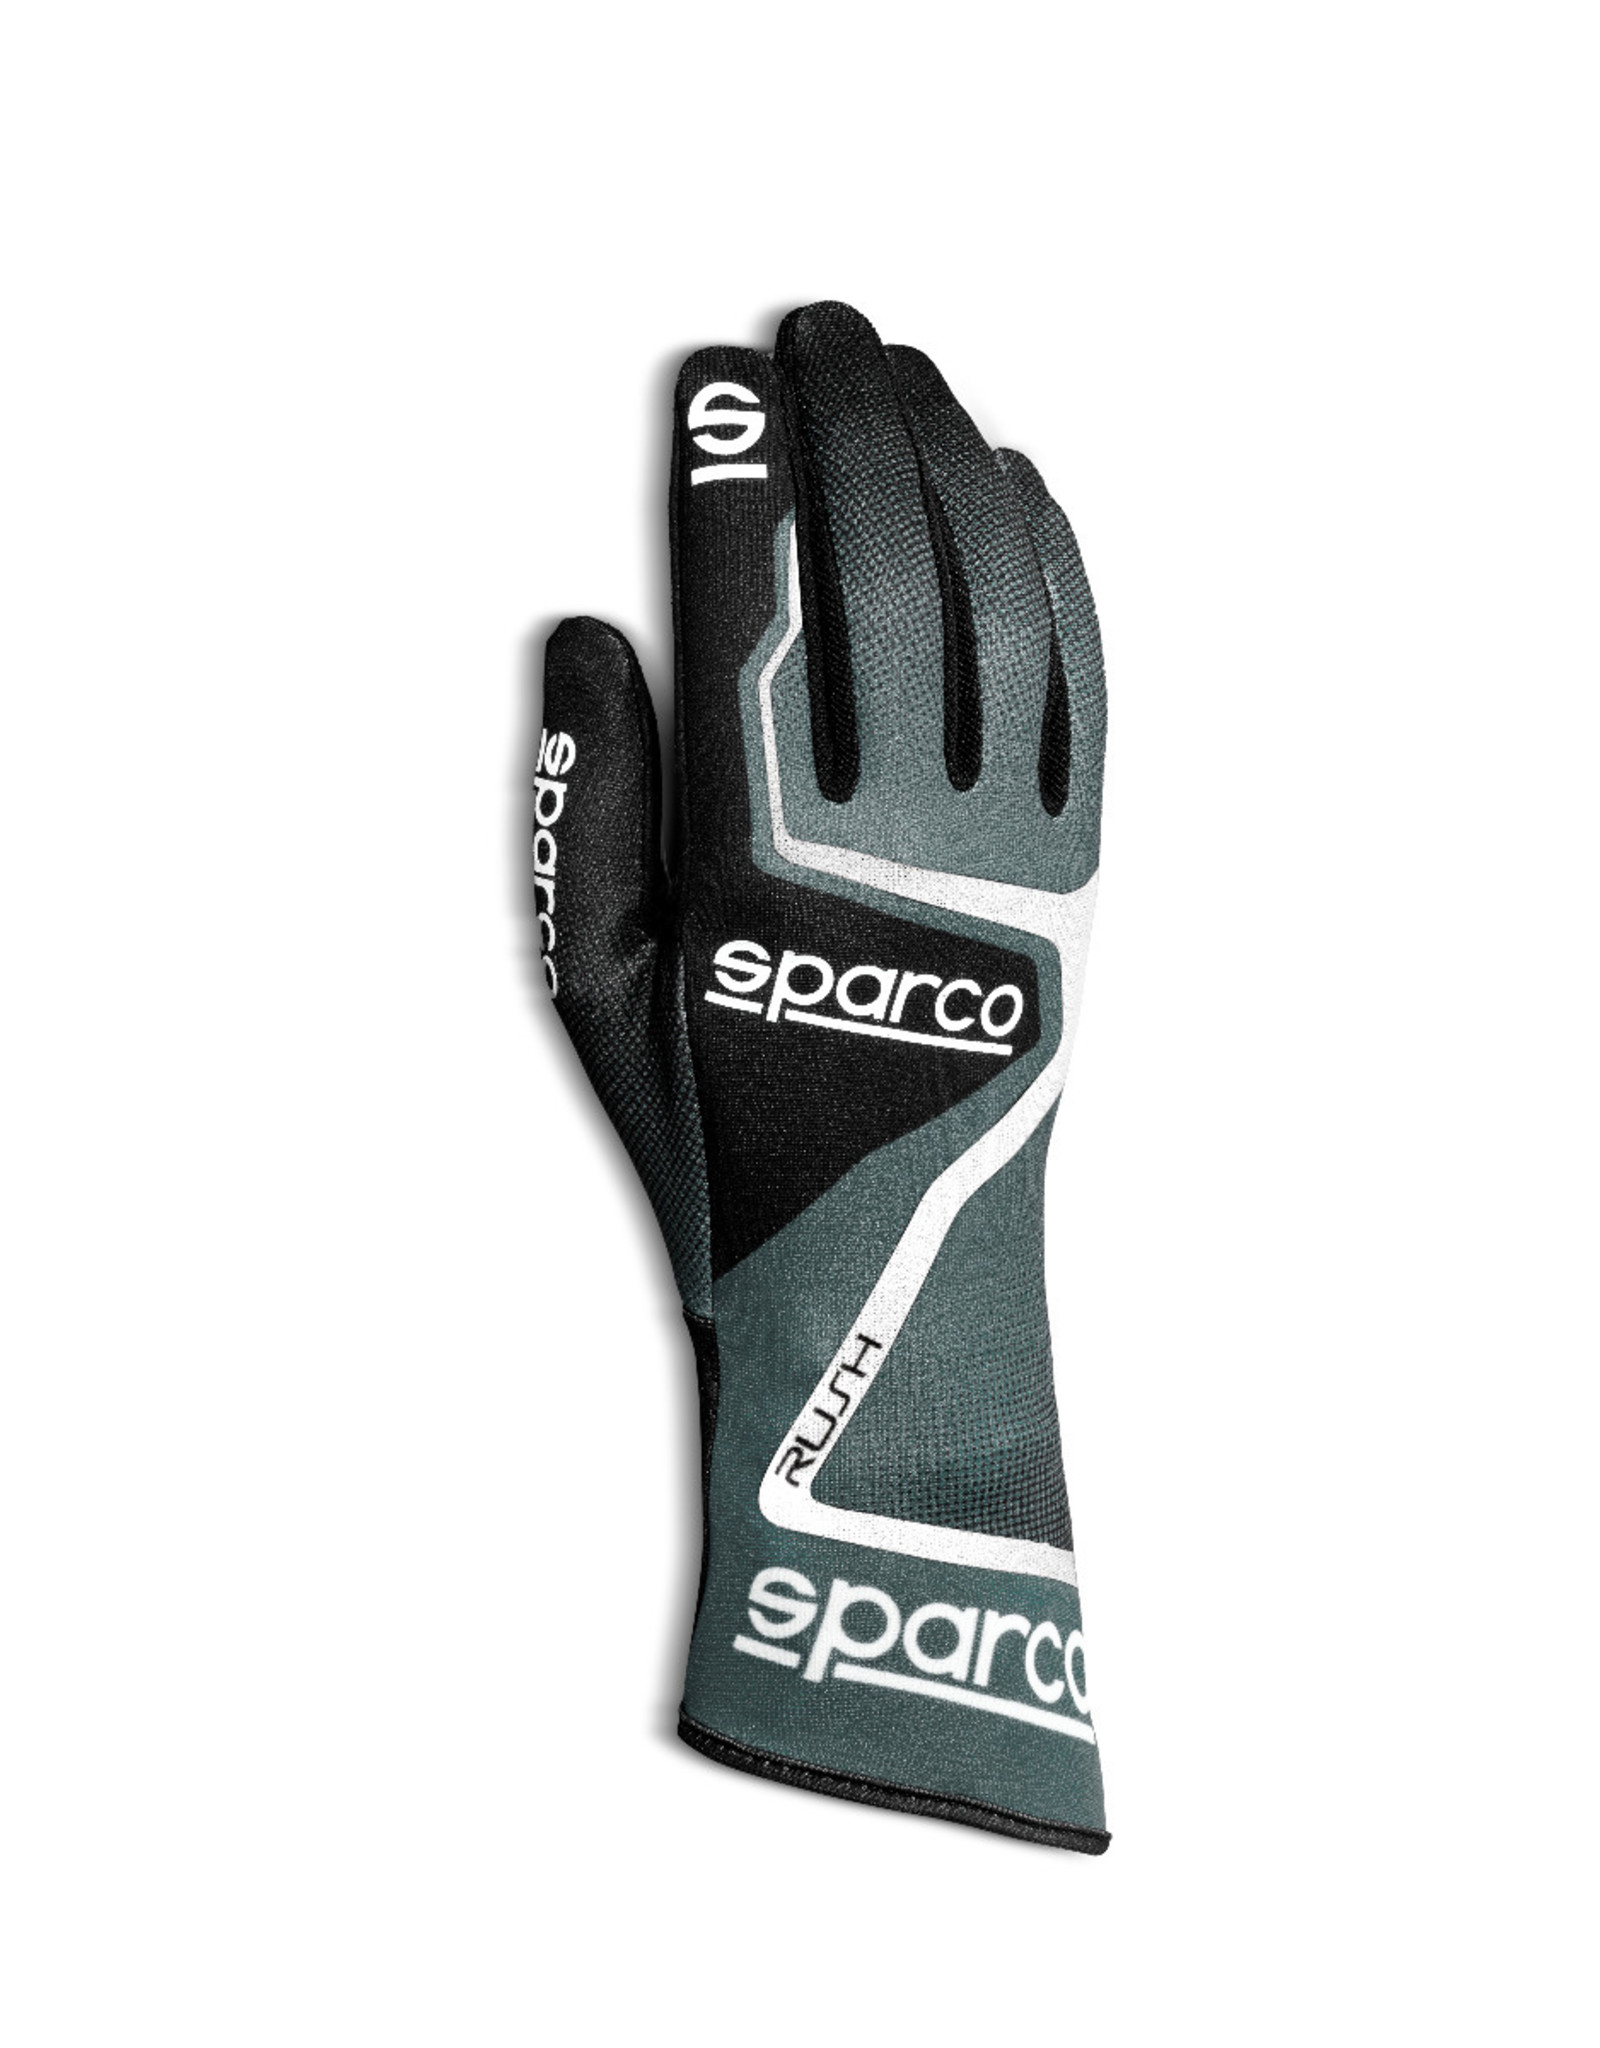 Sparco Sparco Rush kart handschoenen grijs/zwart